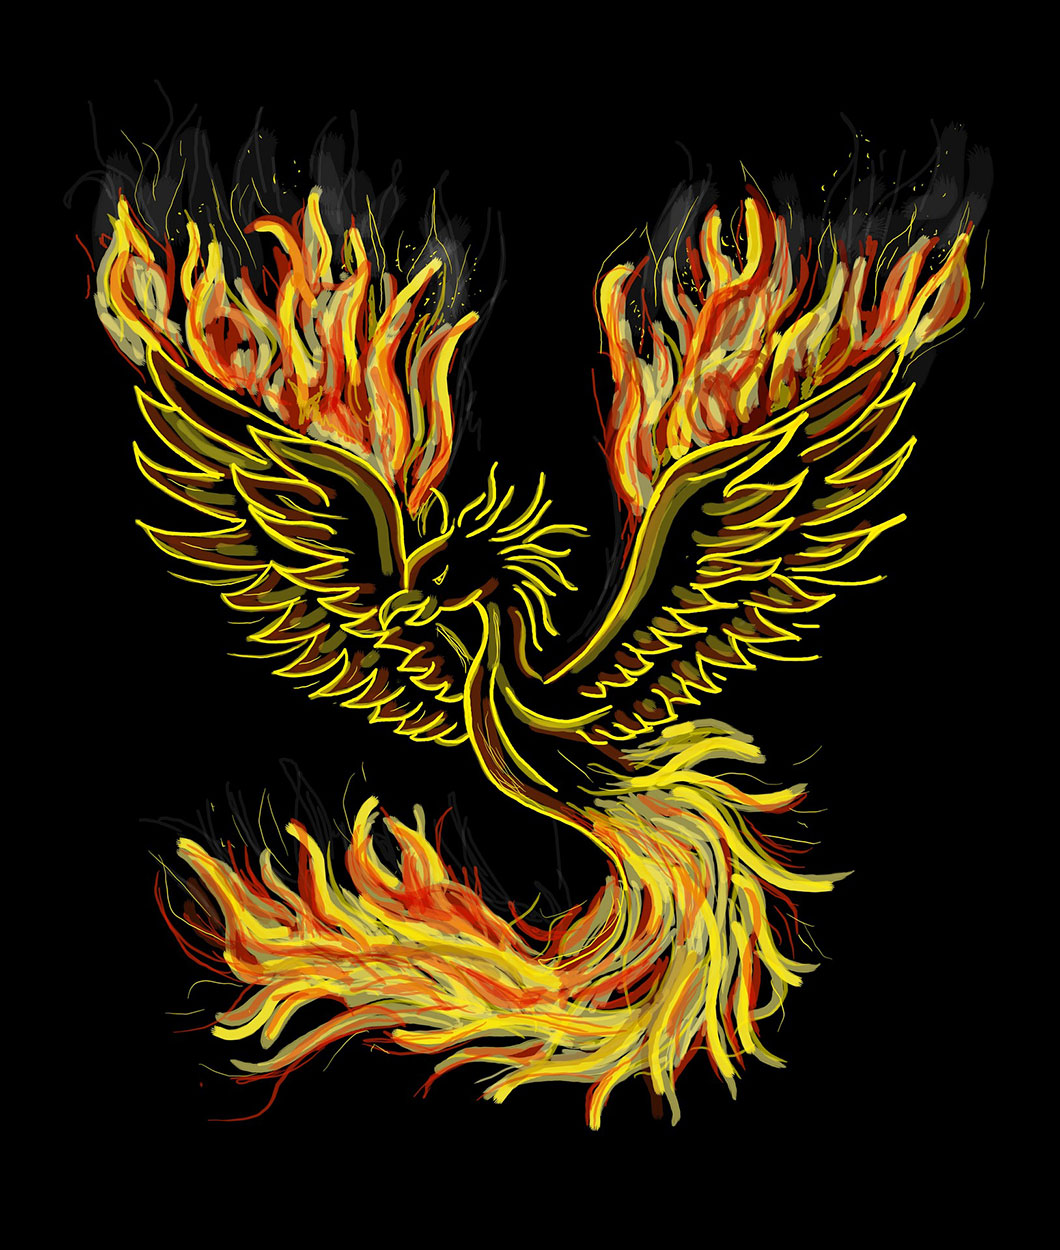 Image de Oiseau: Oiseau Legendaire Image De Phoenix